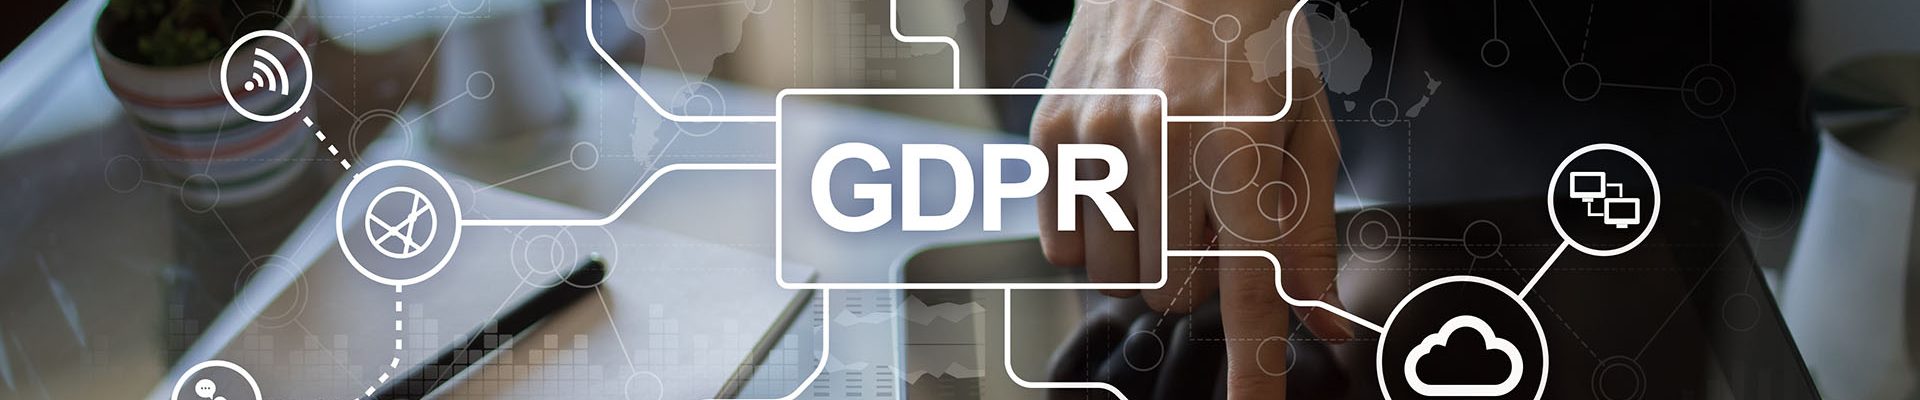 el-rgpd-entra-en-vigor-nuevo-reglamento-de-proteccion-de-datos